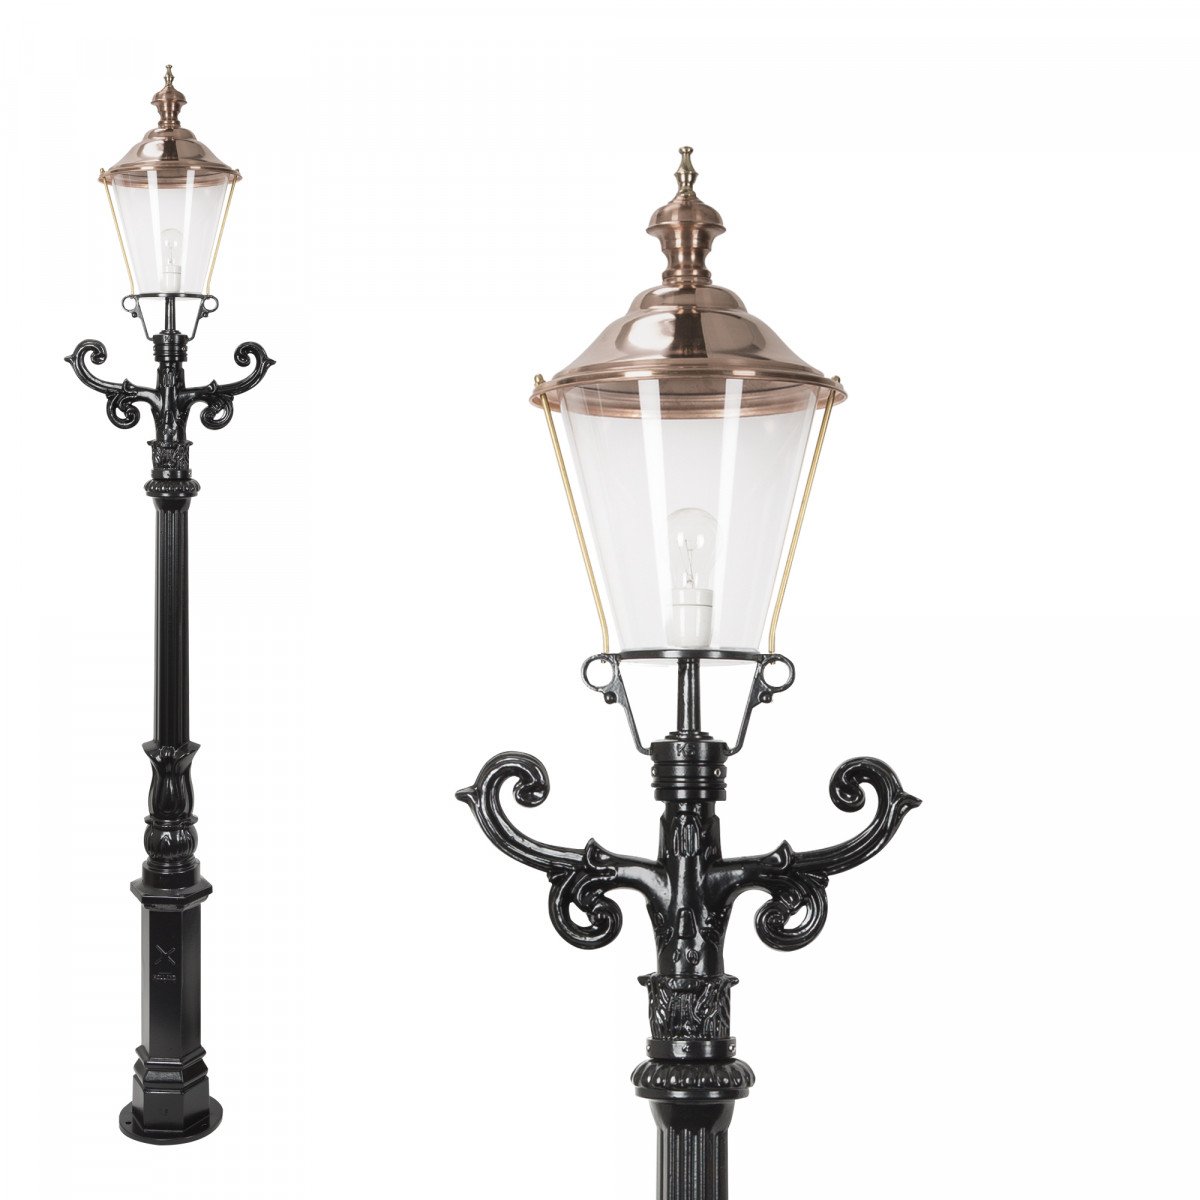 Set de 3 lampadaires De Zaan (0605) avec lanternes rondes